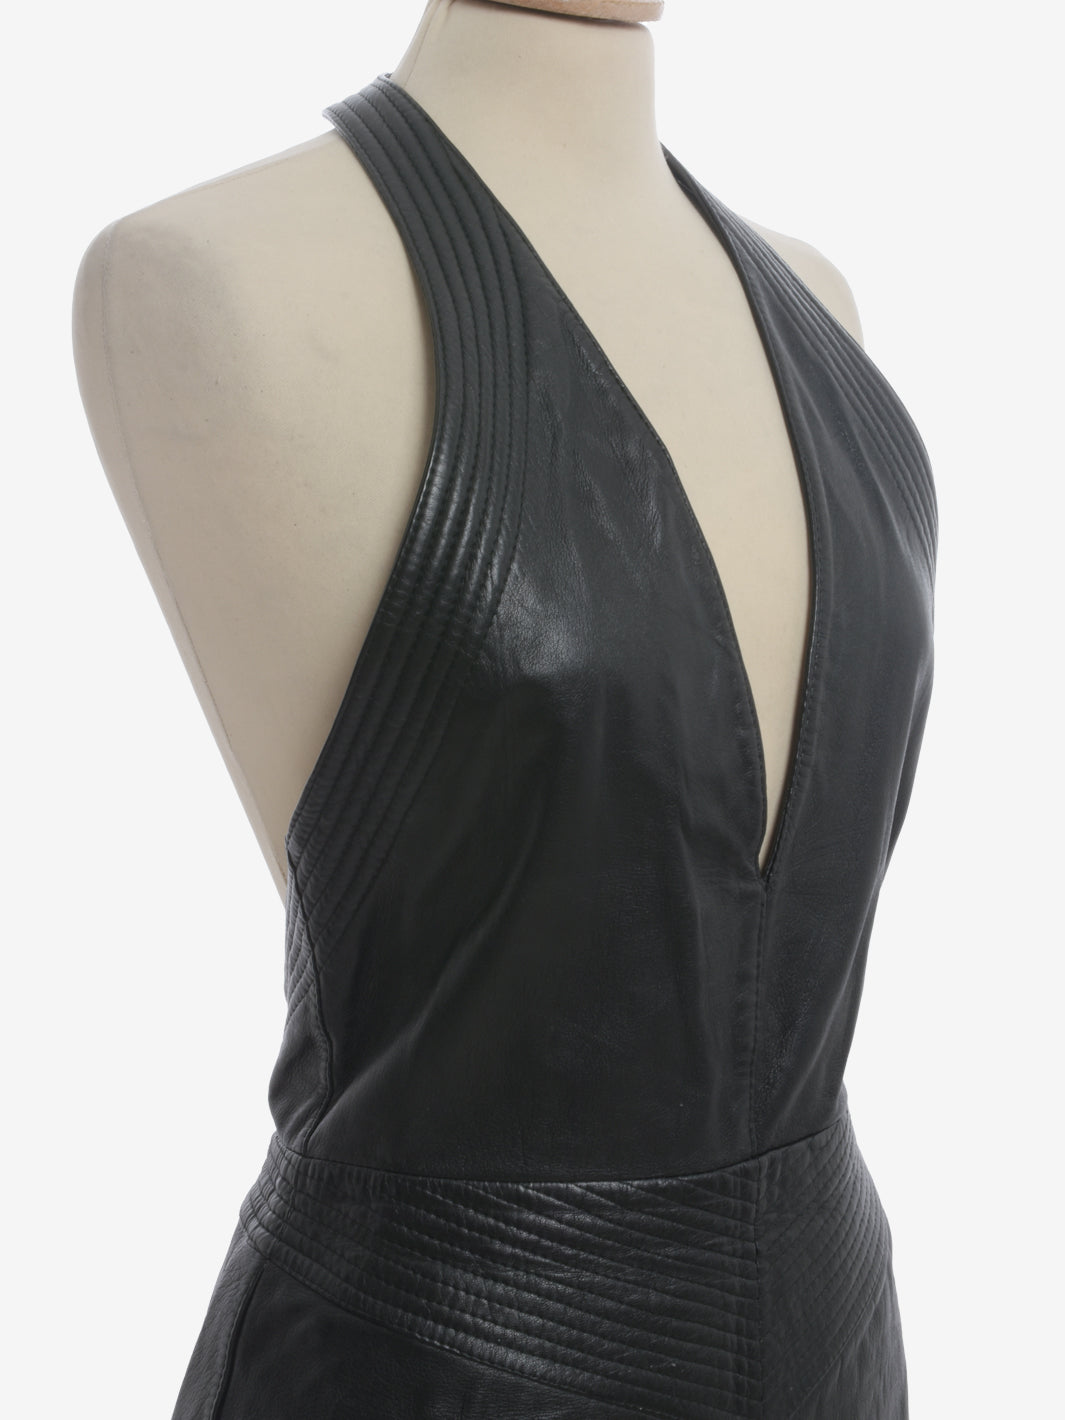 Gianfranco Ferré Leather Midi Dress - 80s